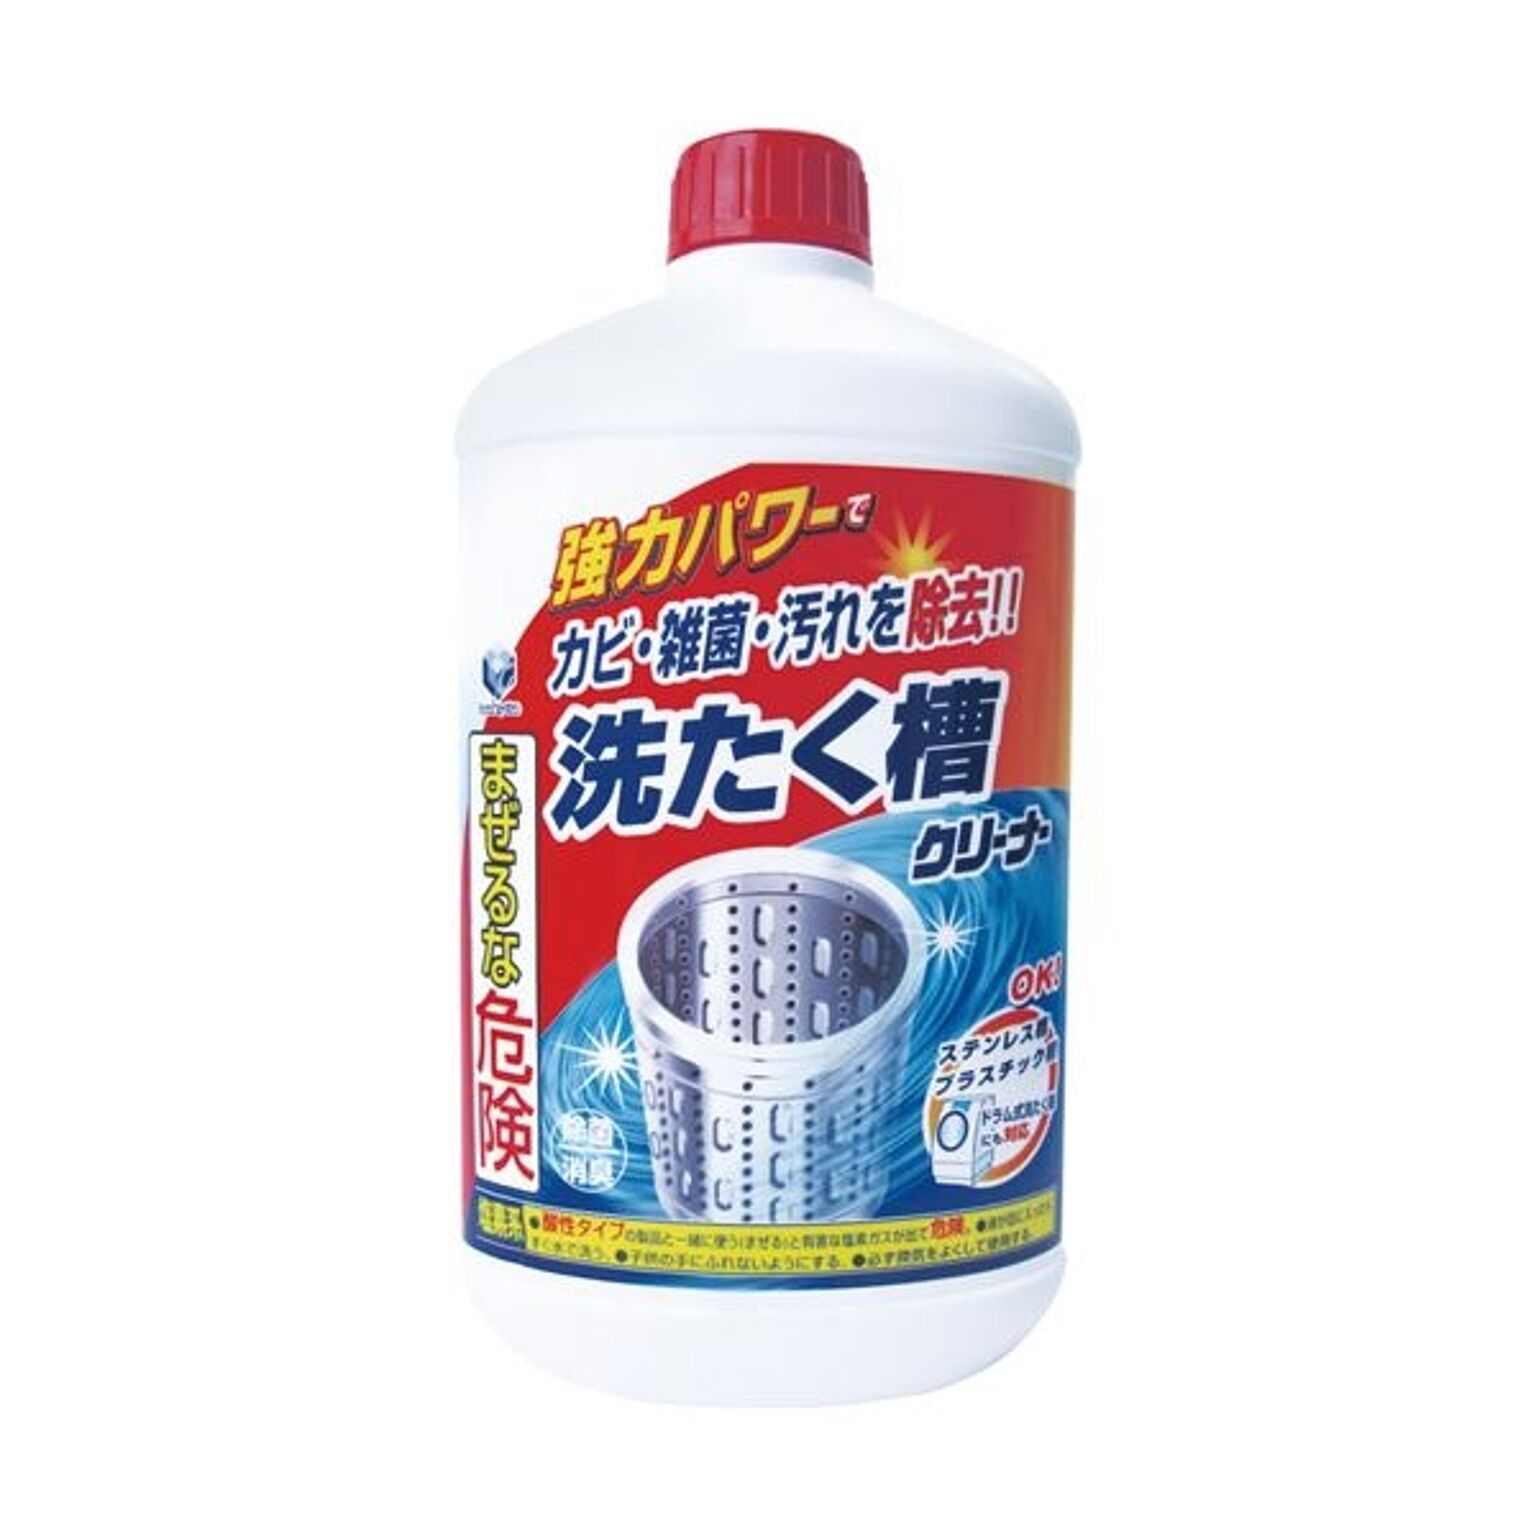 （まとめ）第一石鹸 ランドリークラブ液体洗たく槽クリーナー 550g 1本【×20セット】